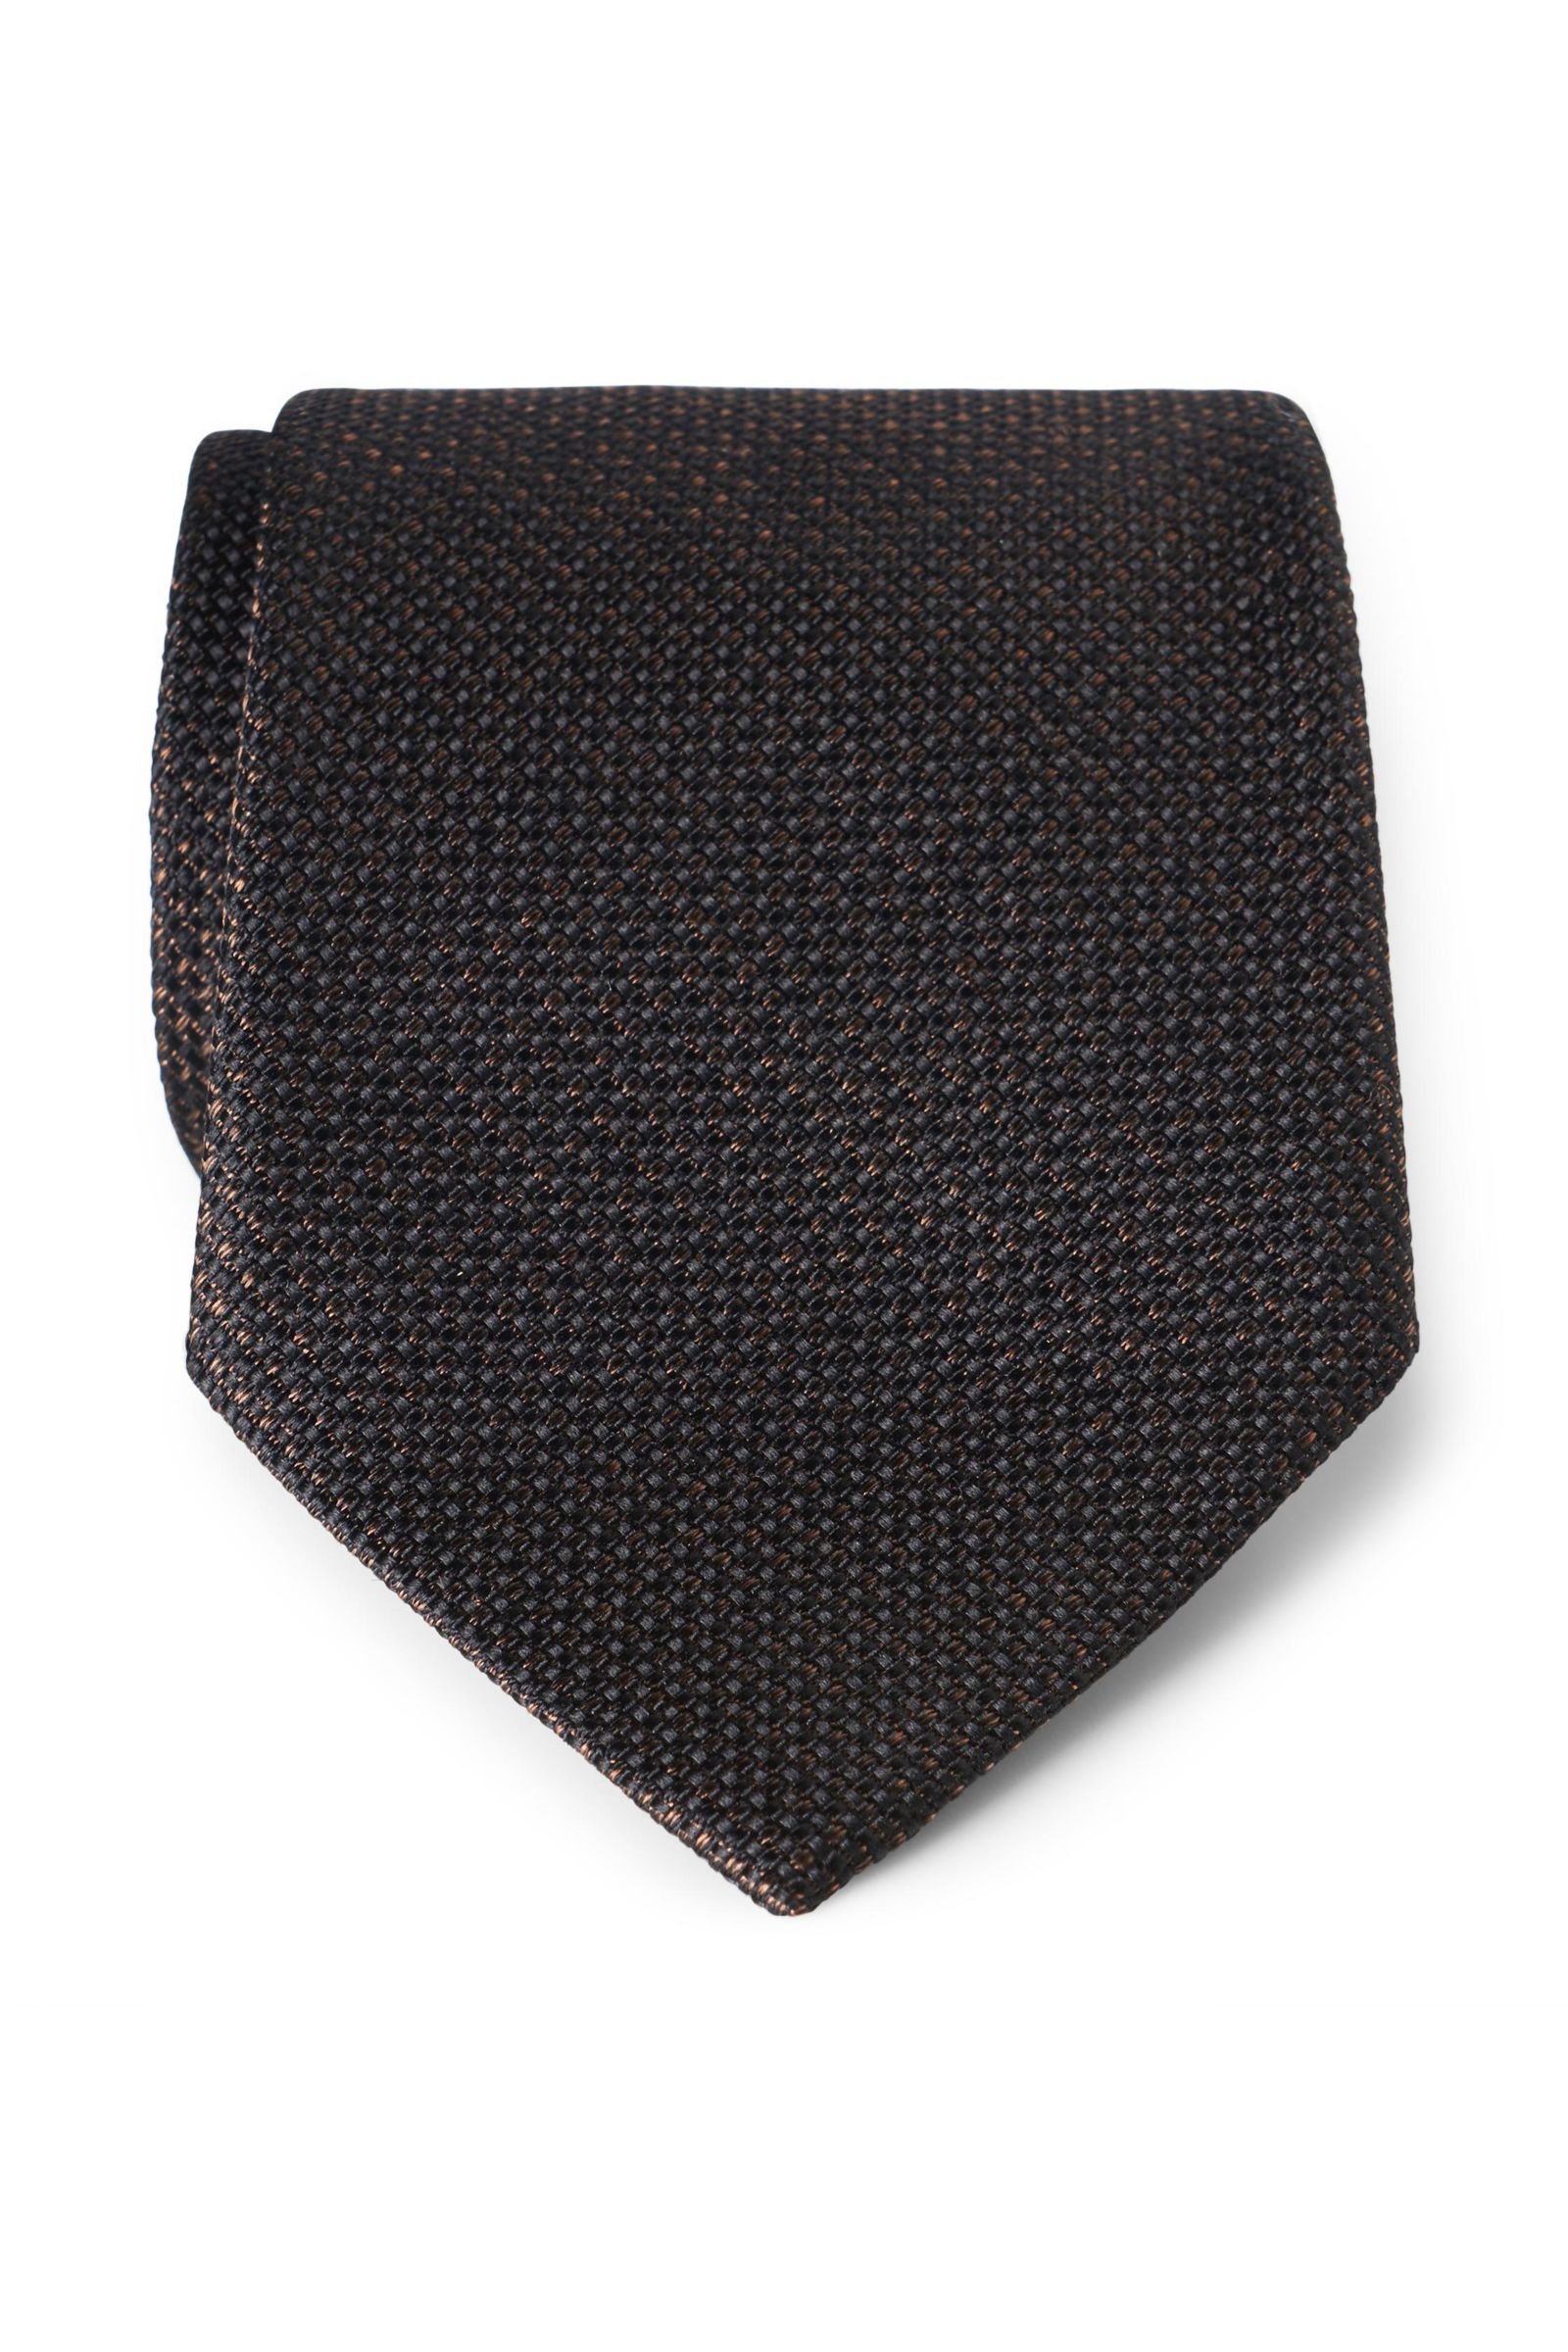 Silk tie dark brown